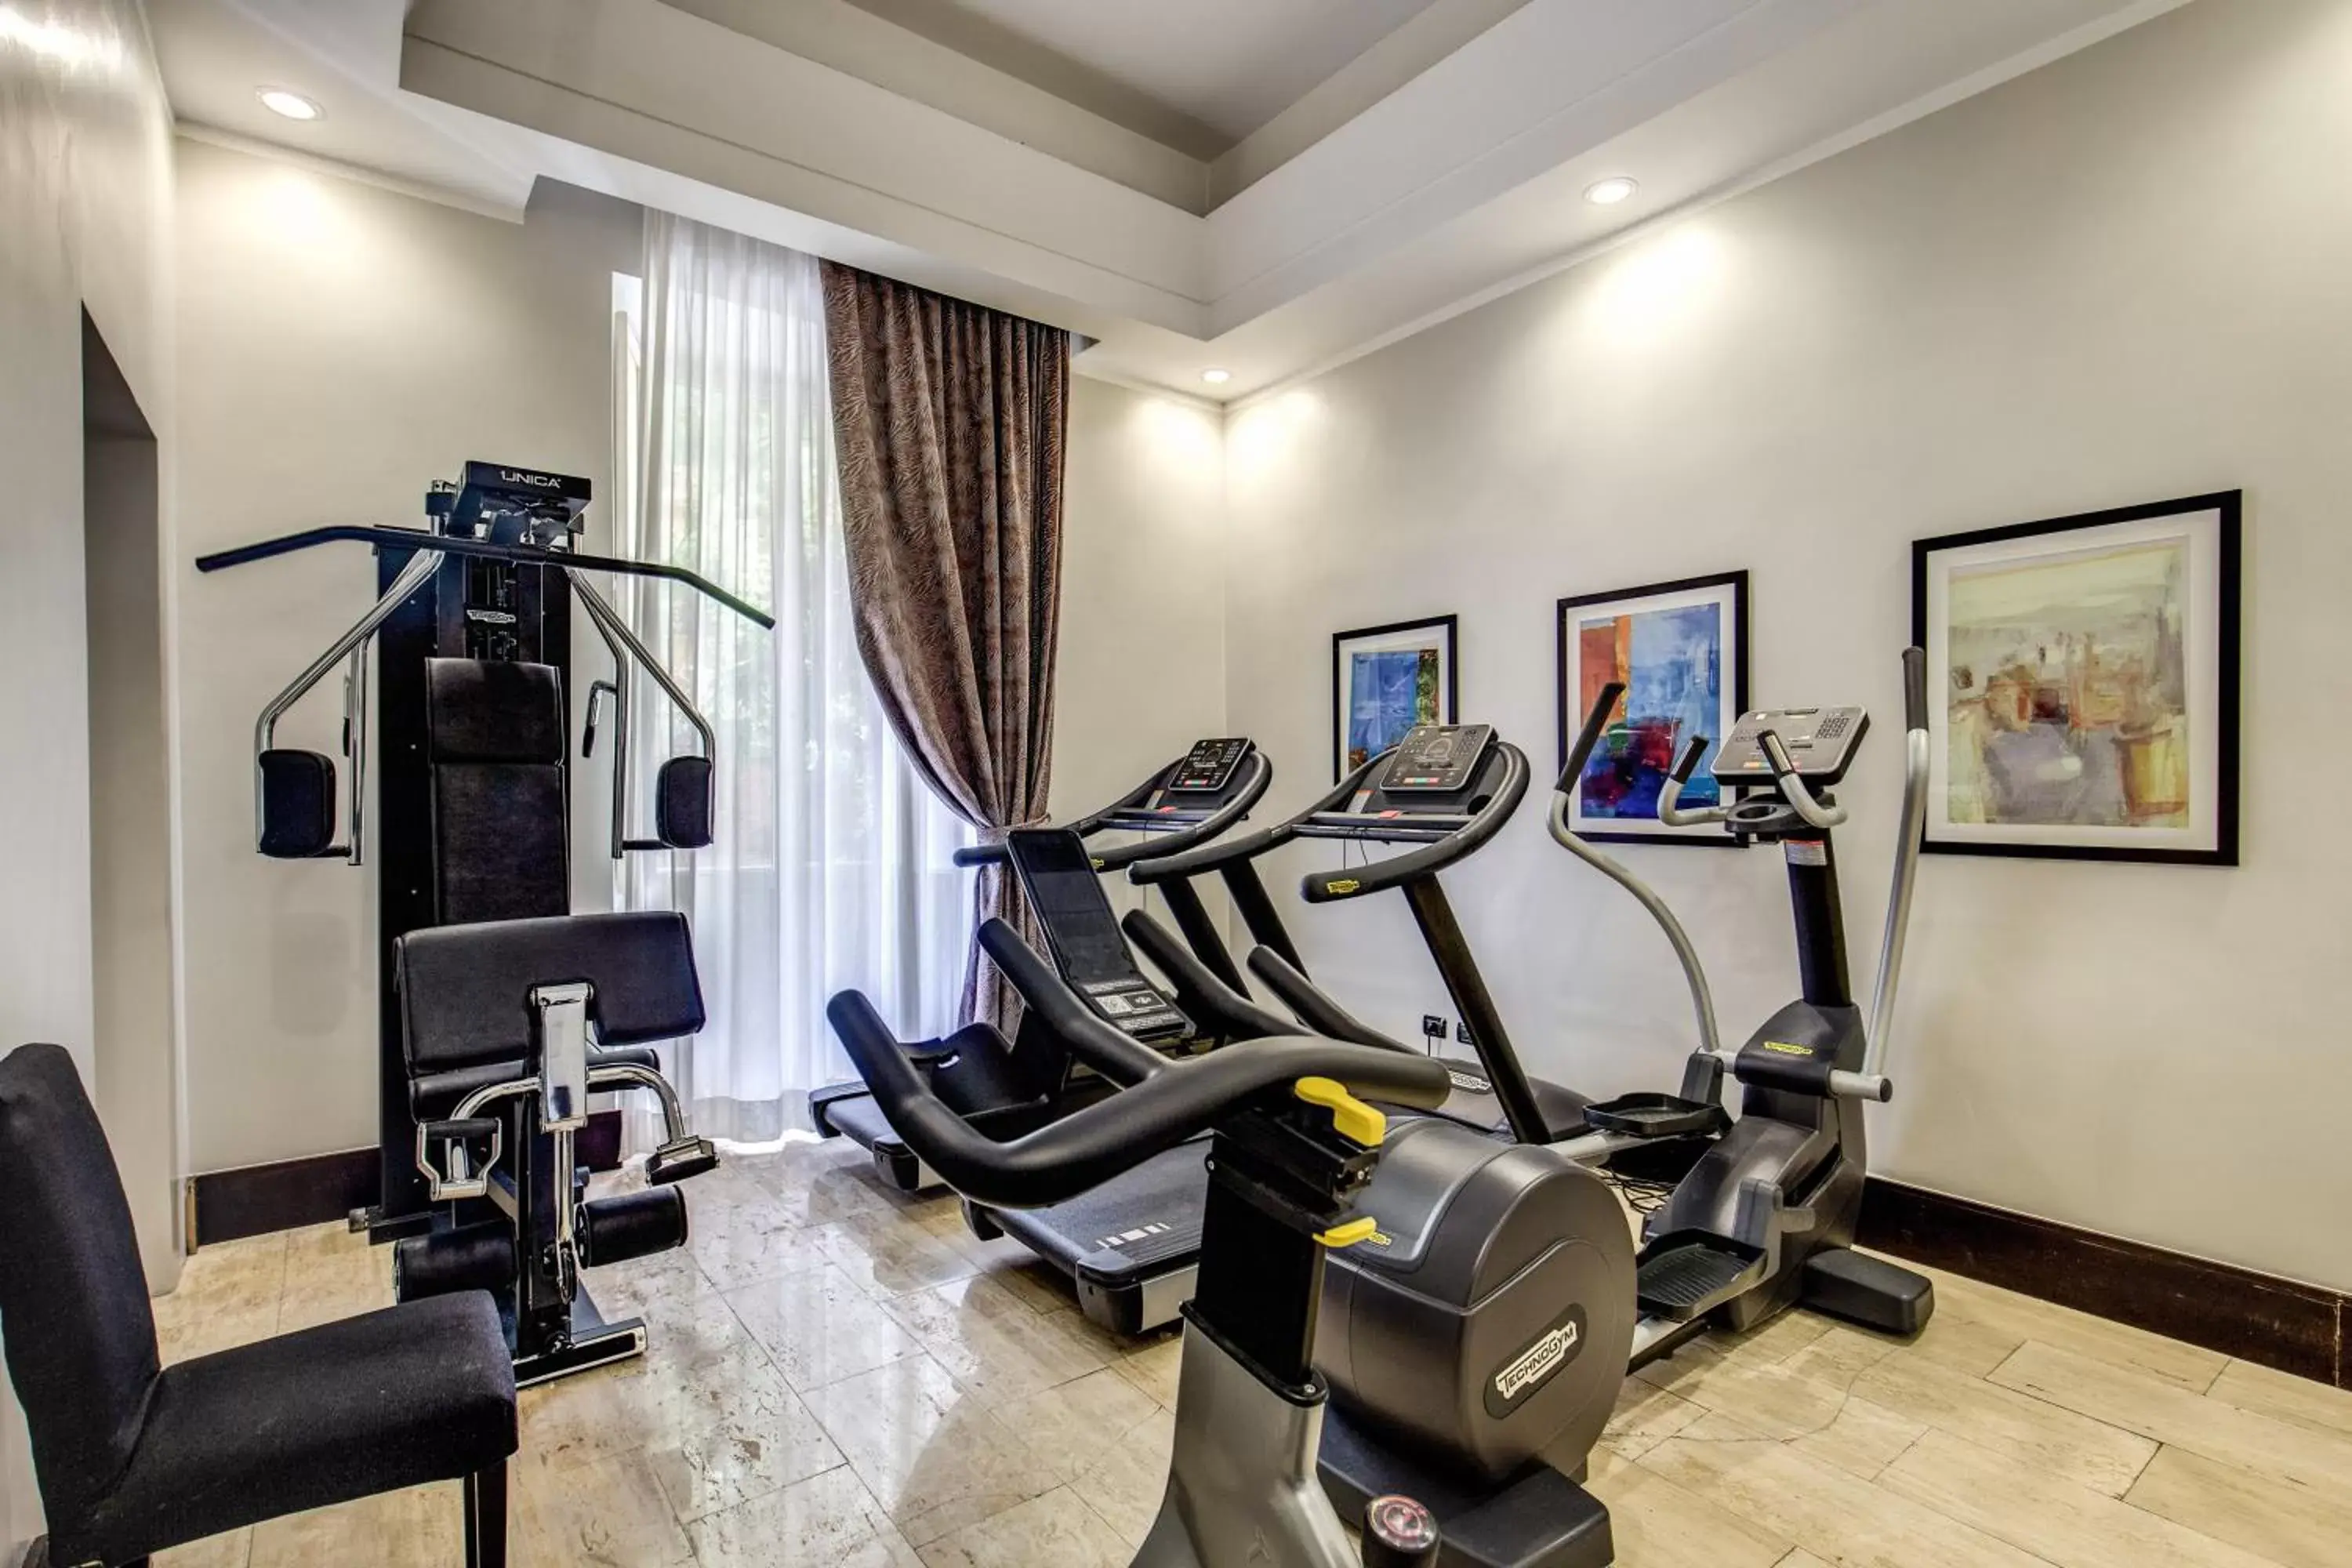 Fitness centre/facilities, Fitness Center/Facilities in Hotel Giuggioli